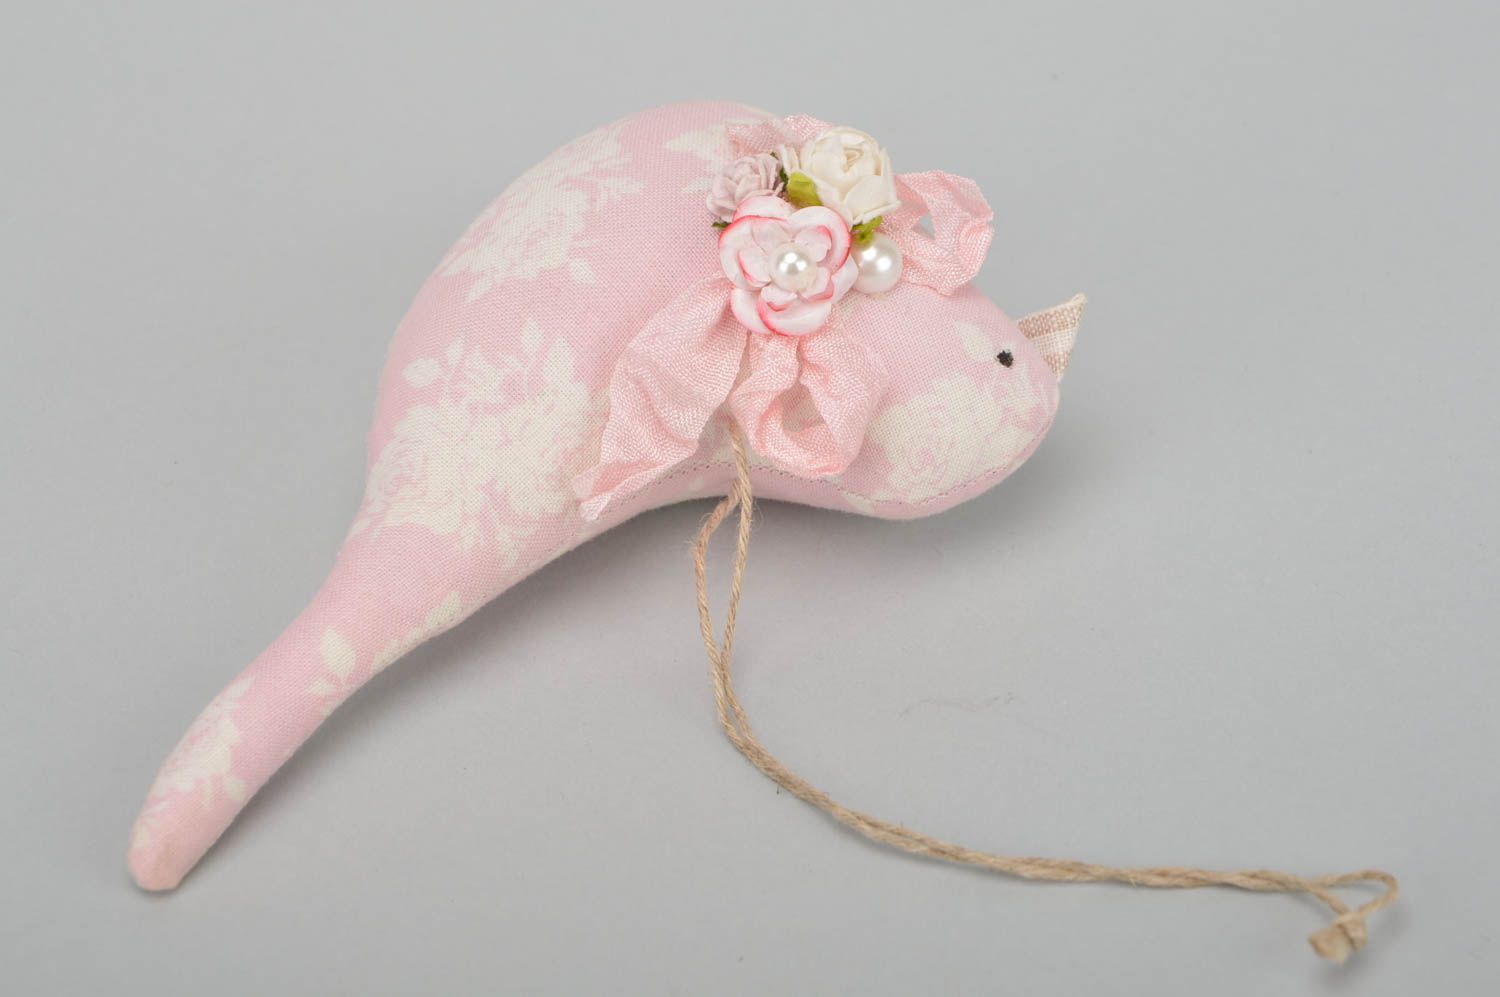 Интерьерная подвеска птичка розовая из хлопка на стену ручной работы для декора фото 3